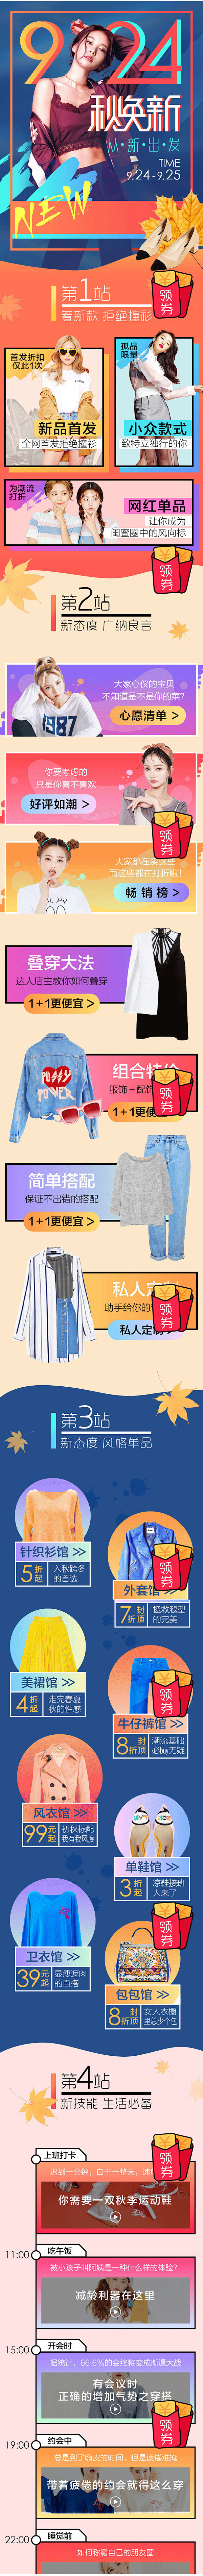 924秋换新服饰h5电商手机版手机专题页...